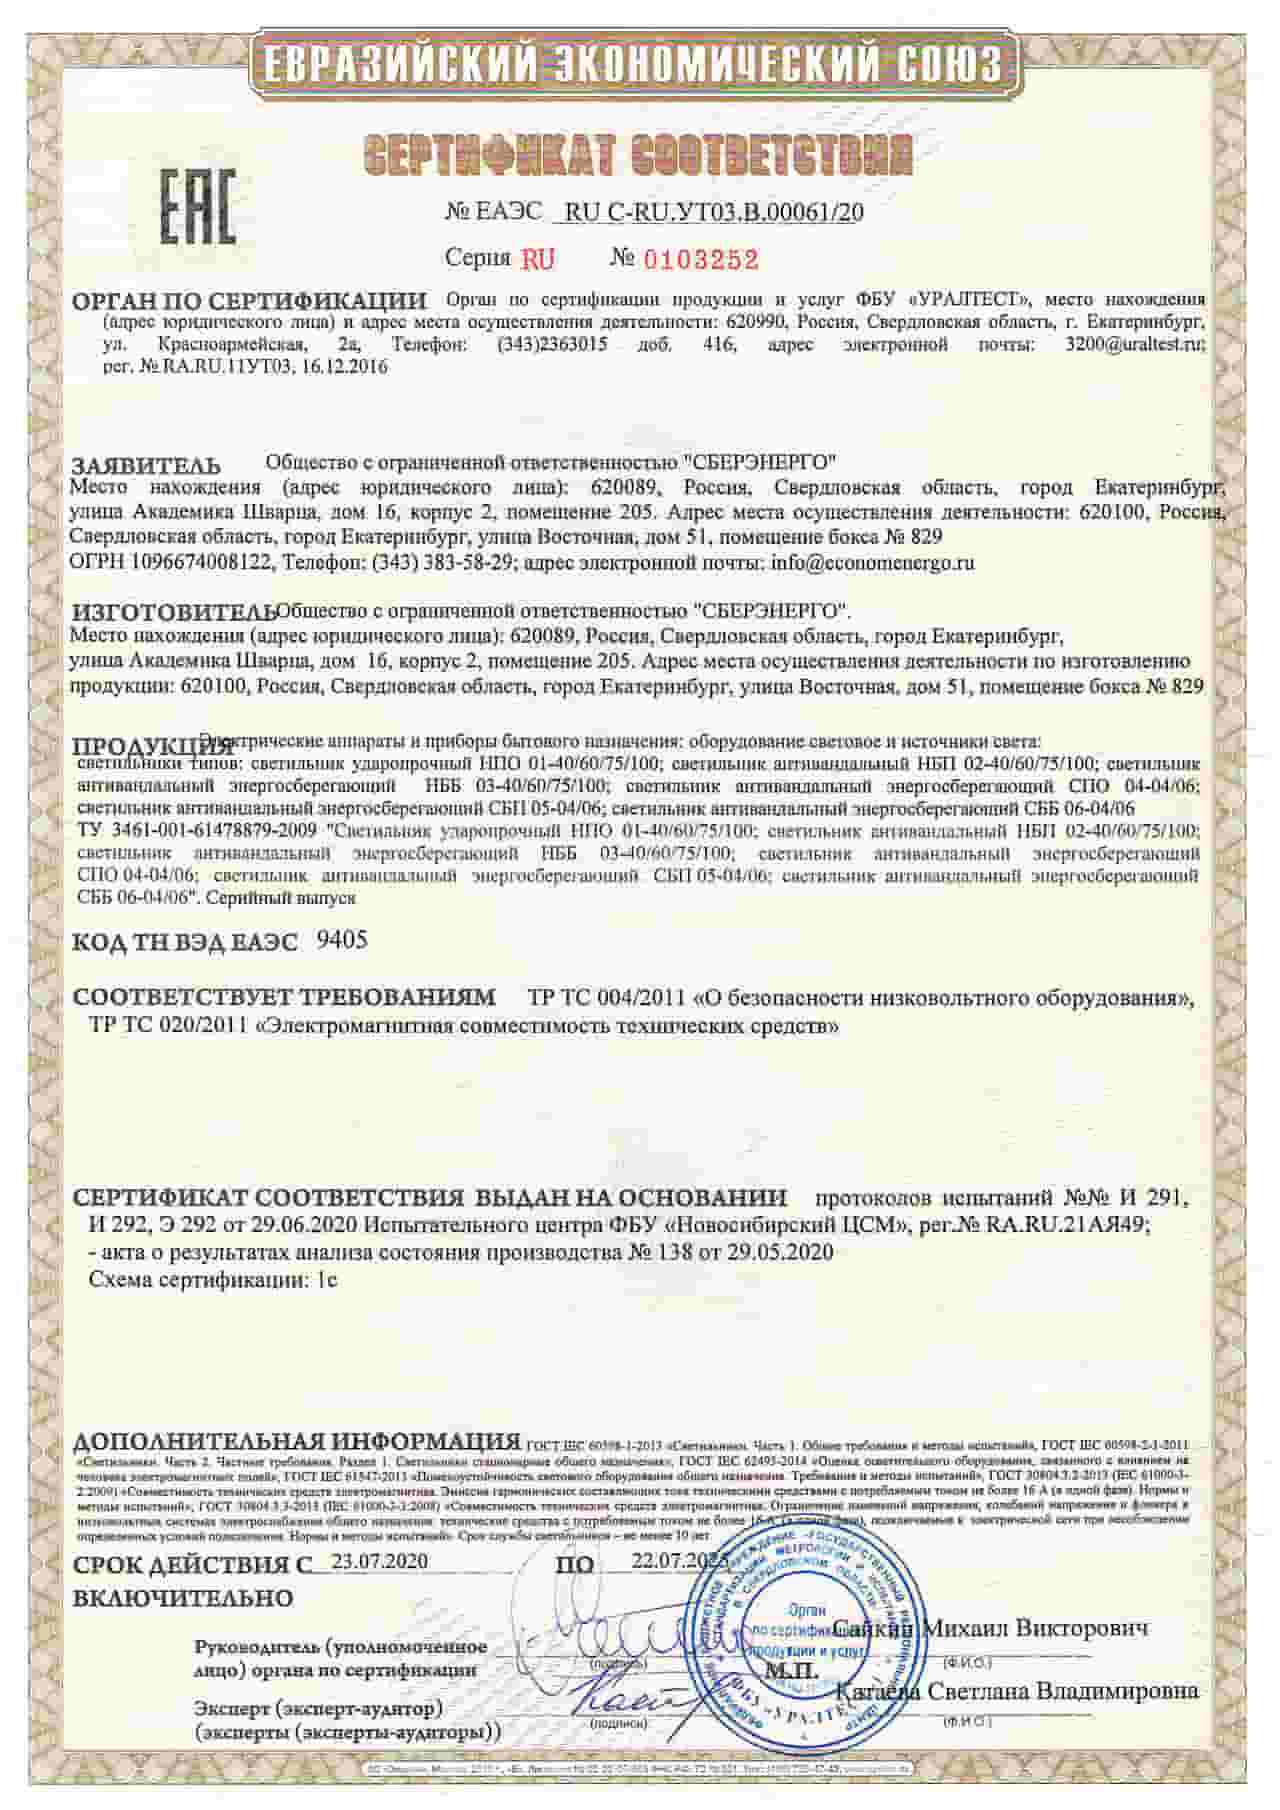 Сертификат светильников Европейского союза производителя светильников ООО «СБЕРЭНЕРГО»